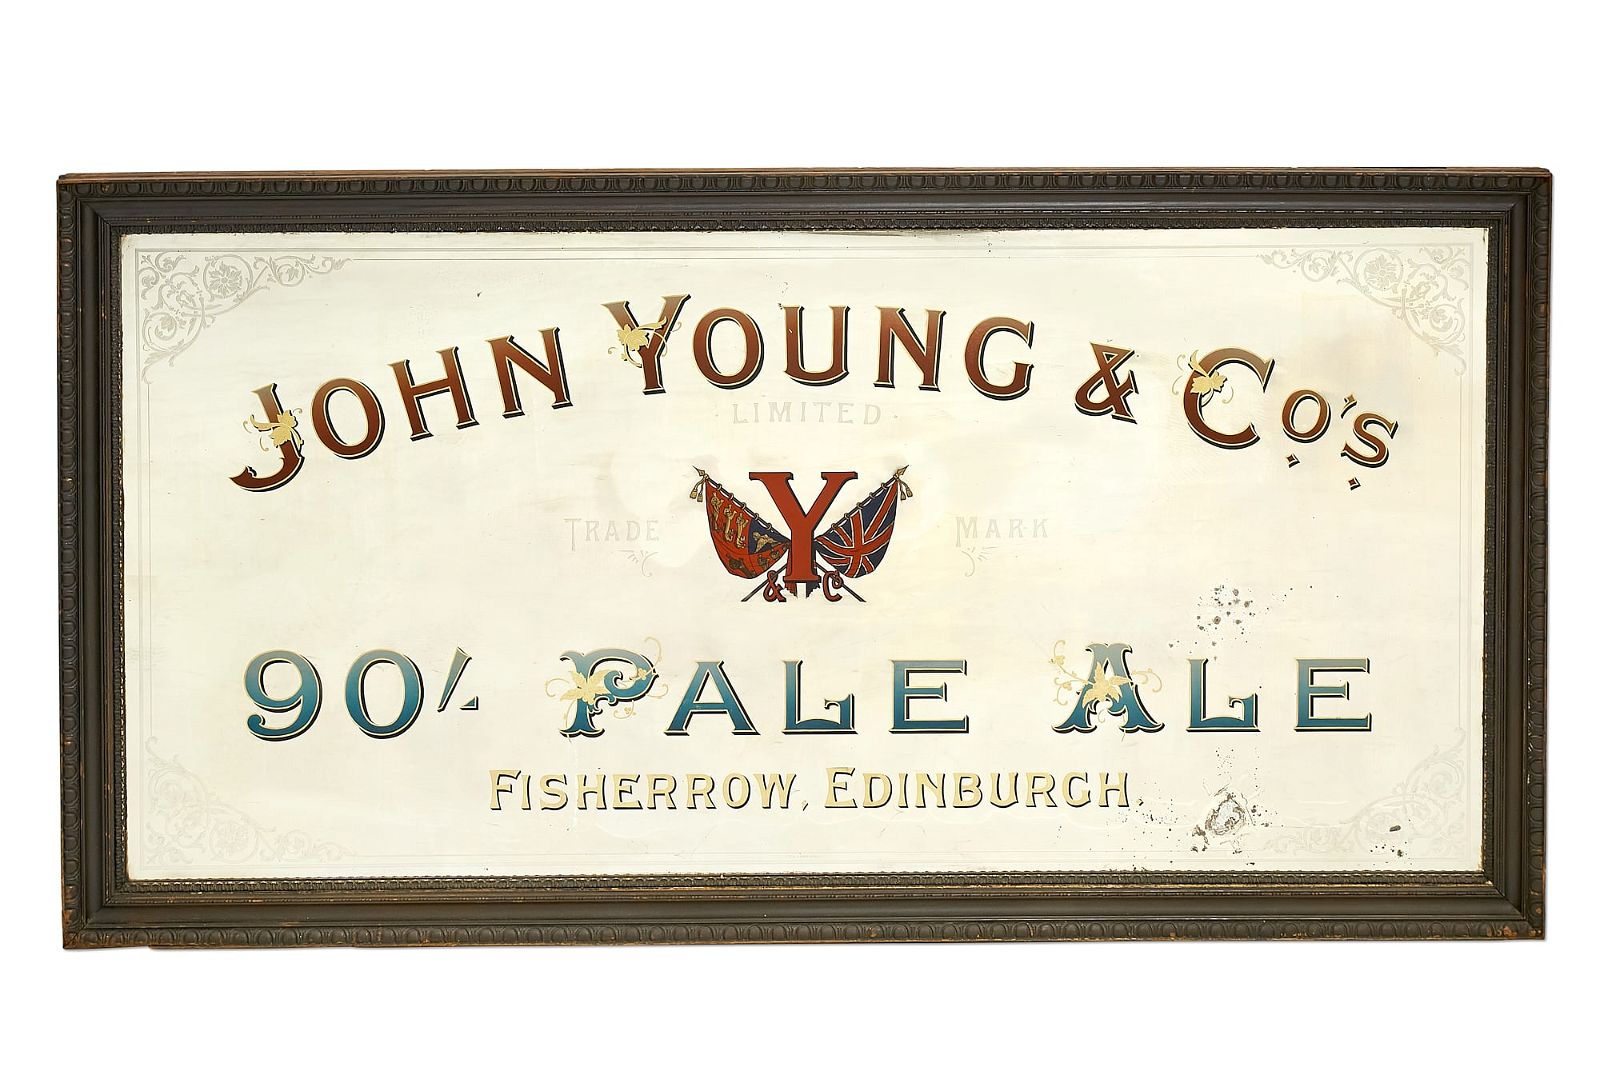 A JOHN YOUNG & COS PALE ALE PUB